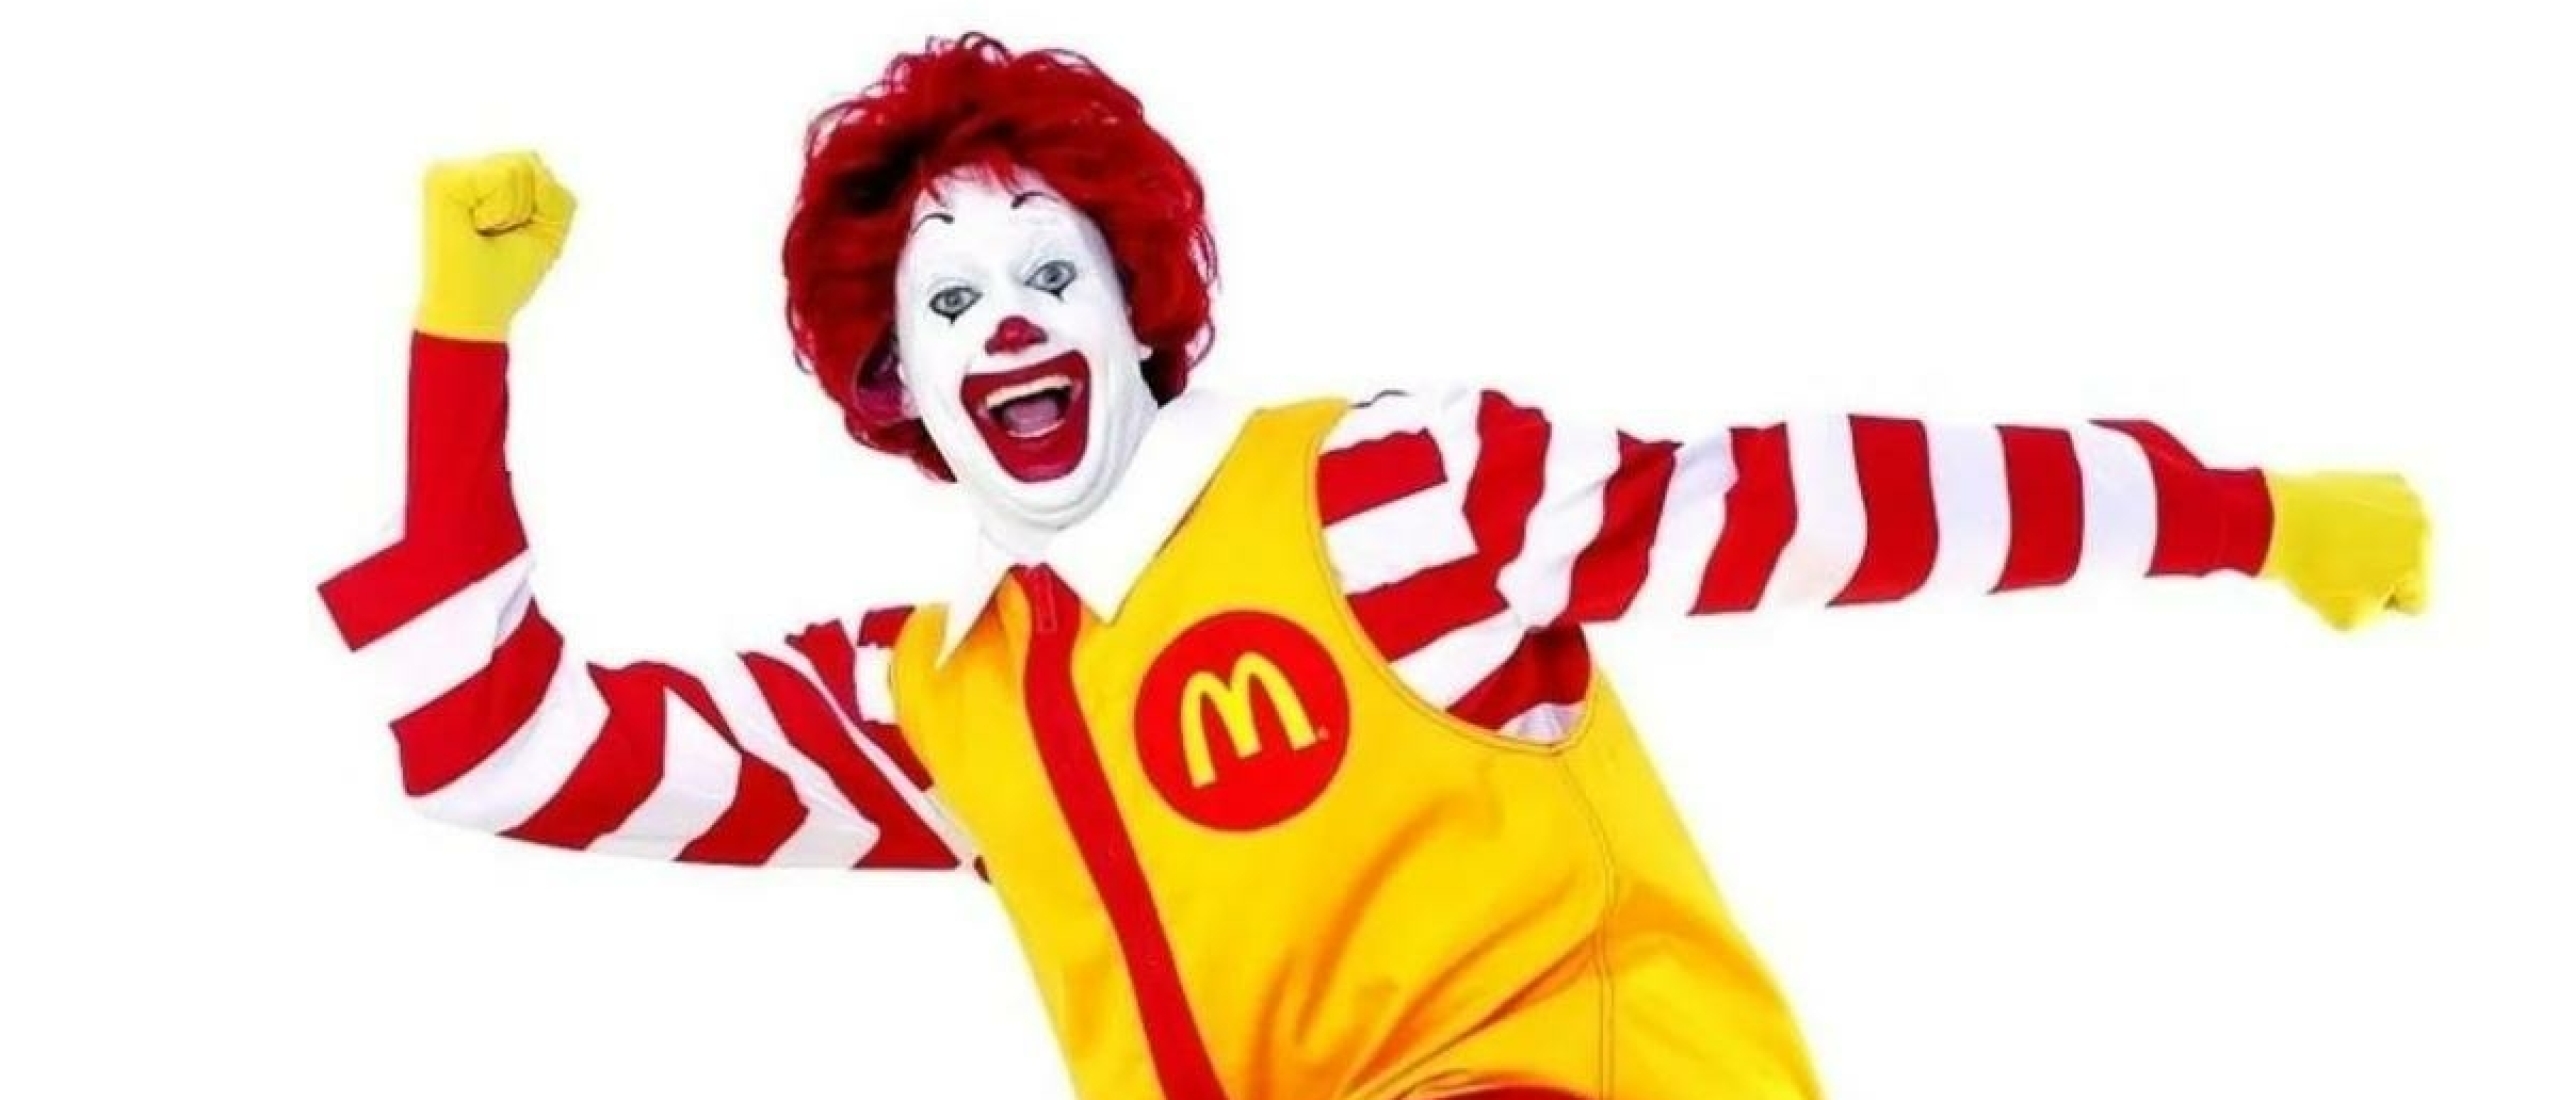 🍔 McDonald's maakte een enorme indruk op mij